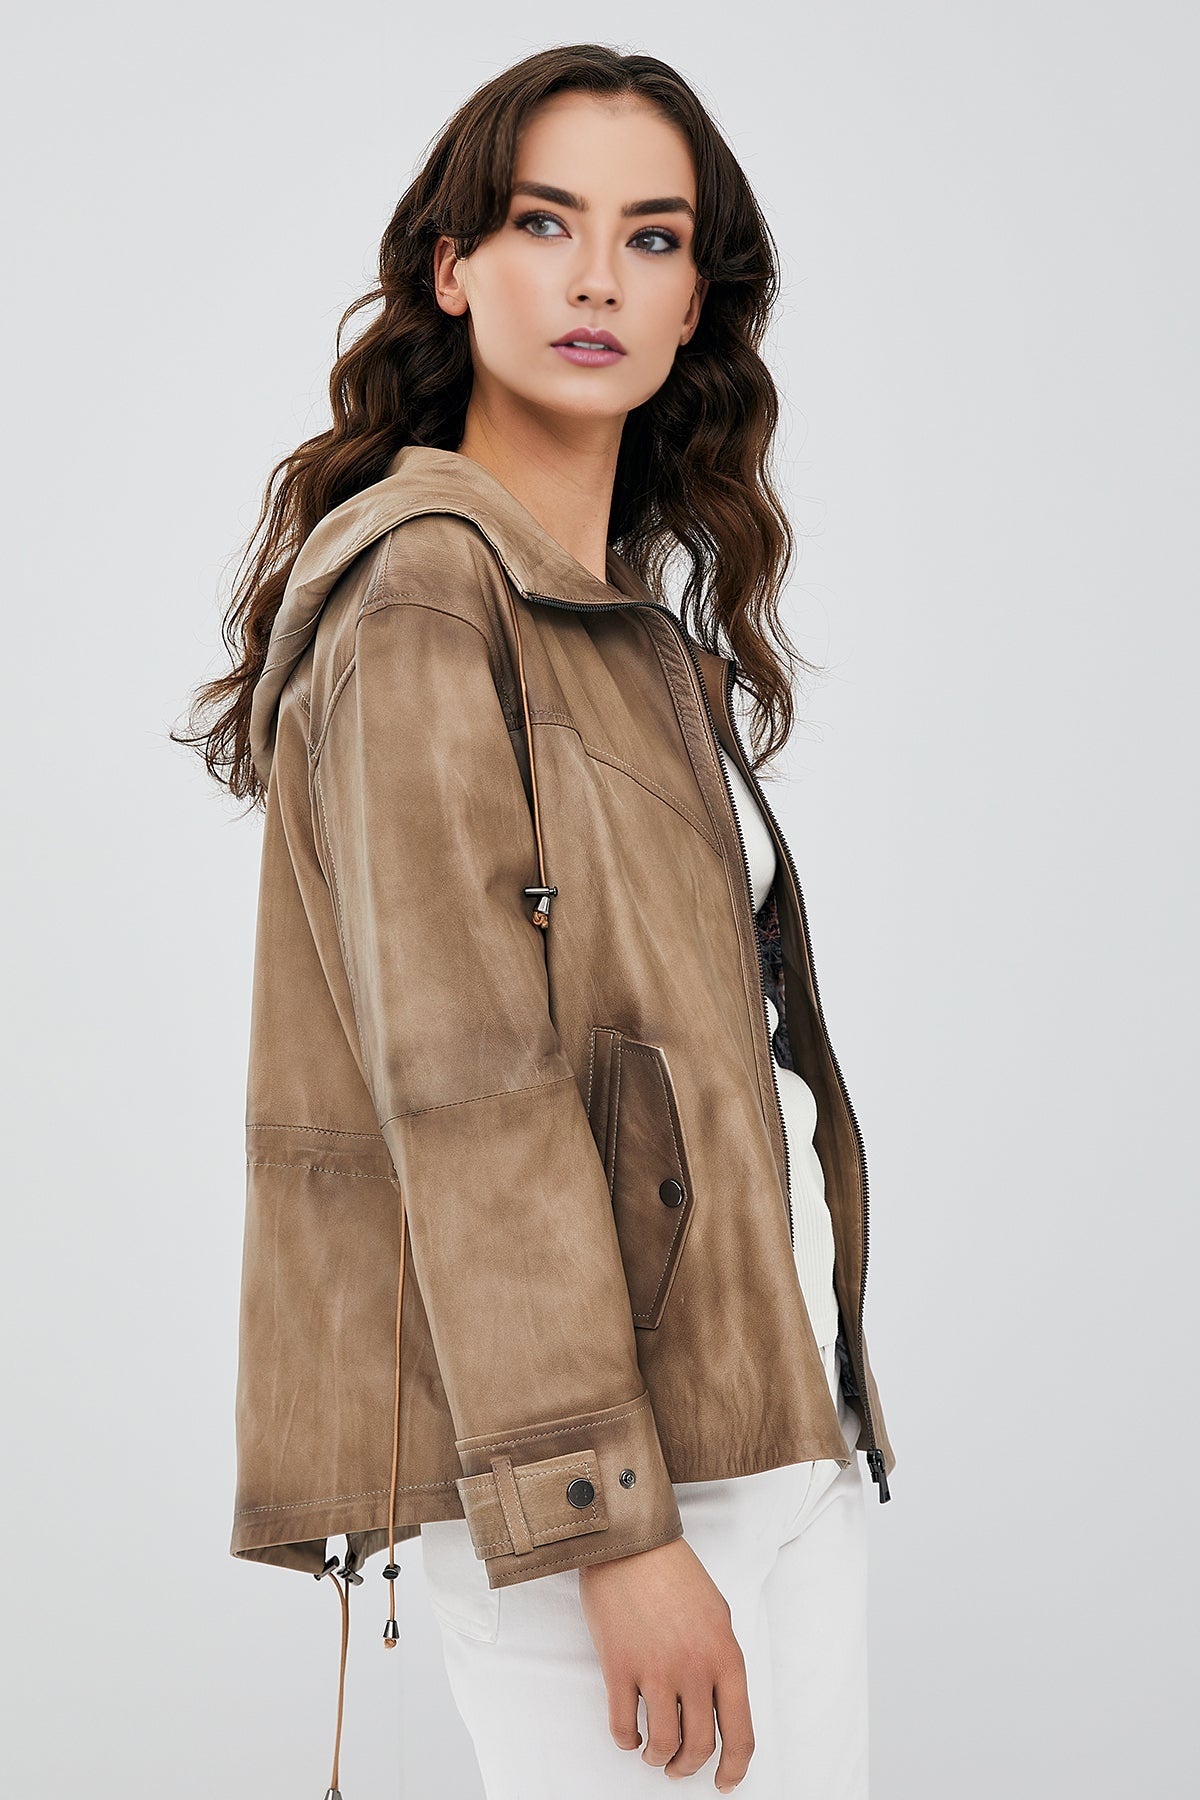 Darlen Women's Beige Oversize Hooded Leather Jacket